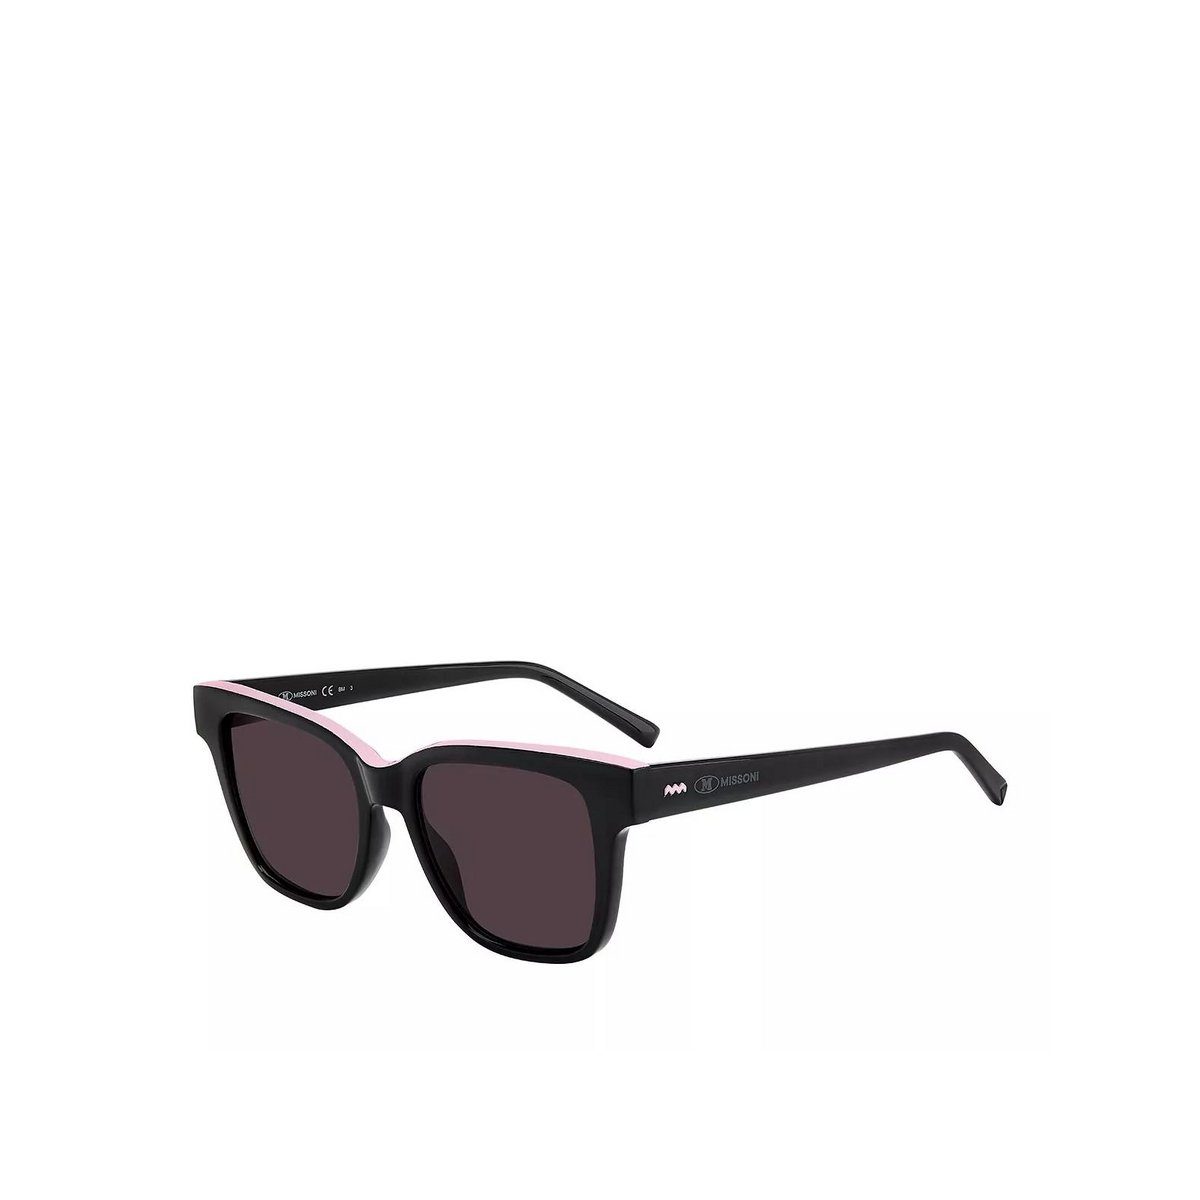 (1-St) Missoni Sonnenbrille schwarz